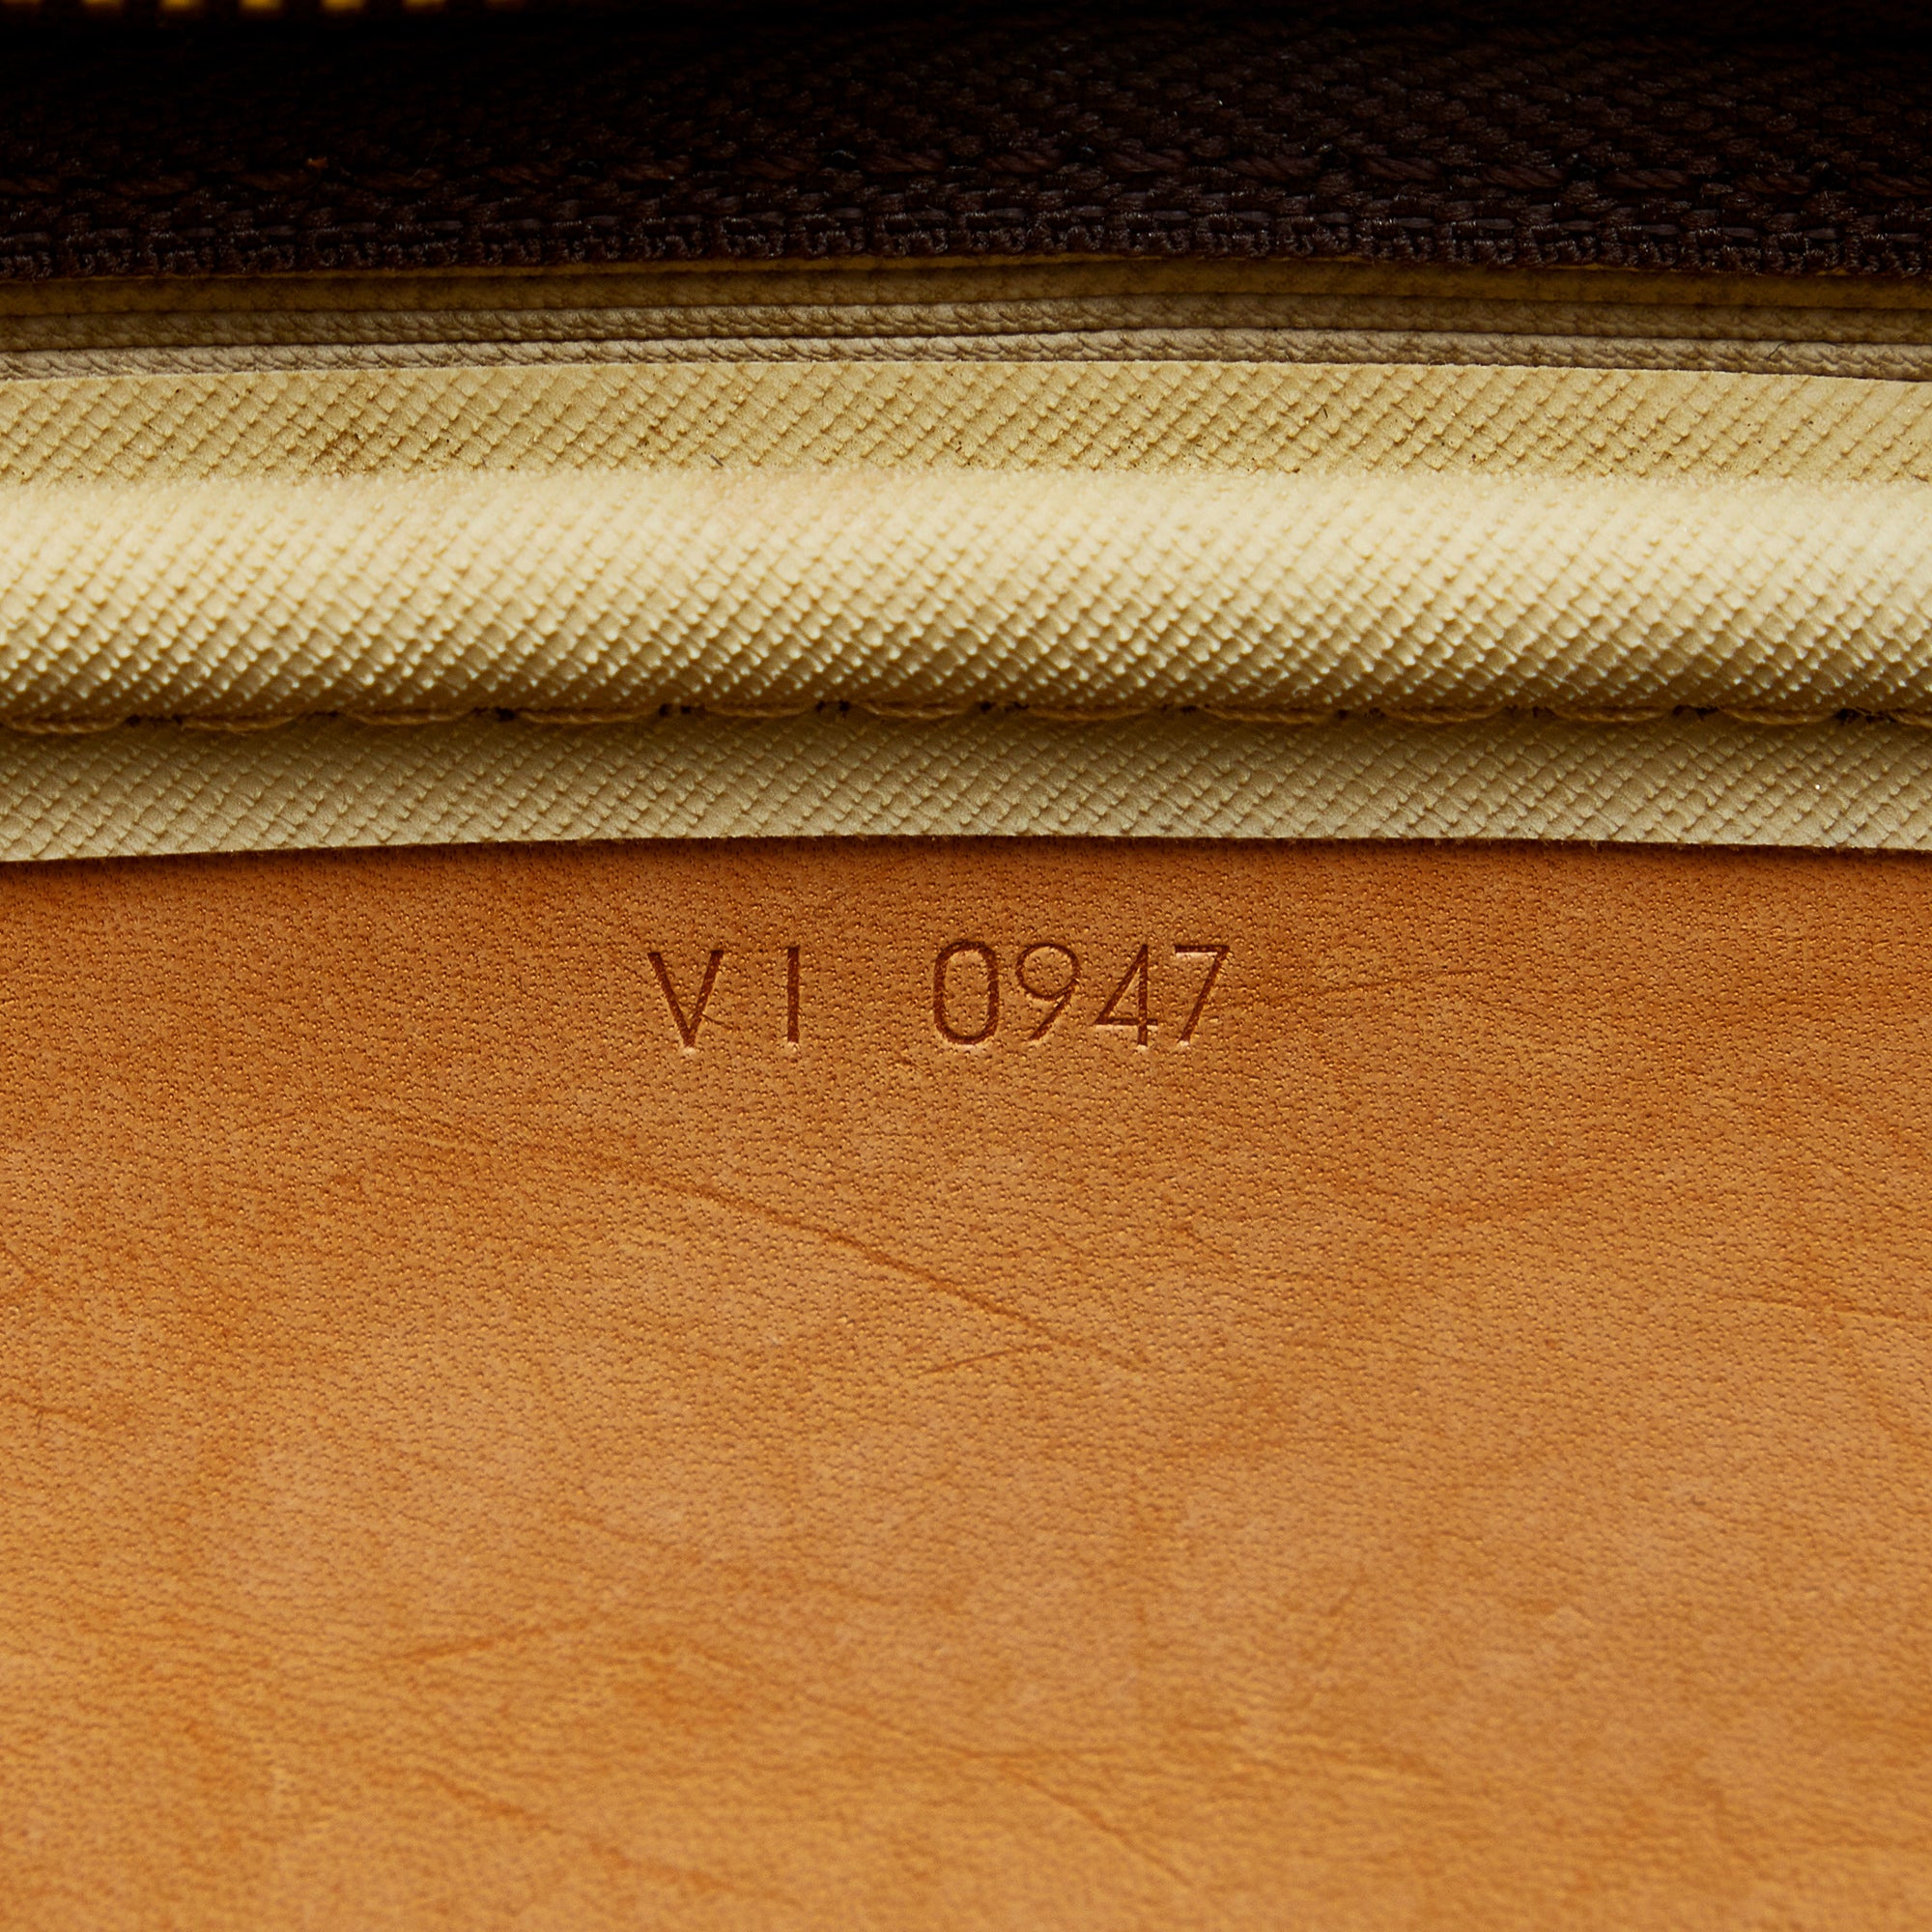 Louis Vuitton Alize Travel bag 360987